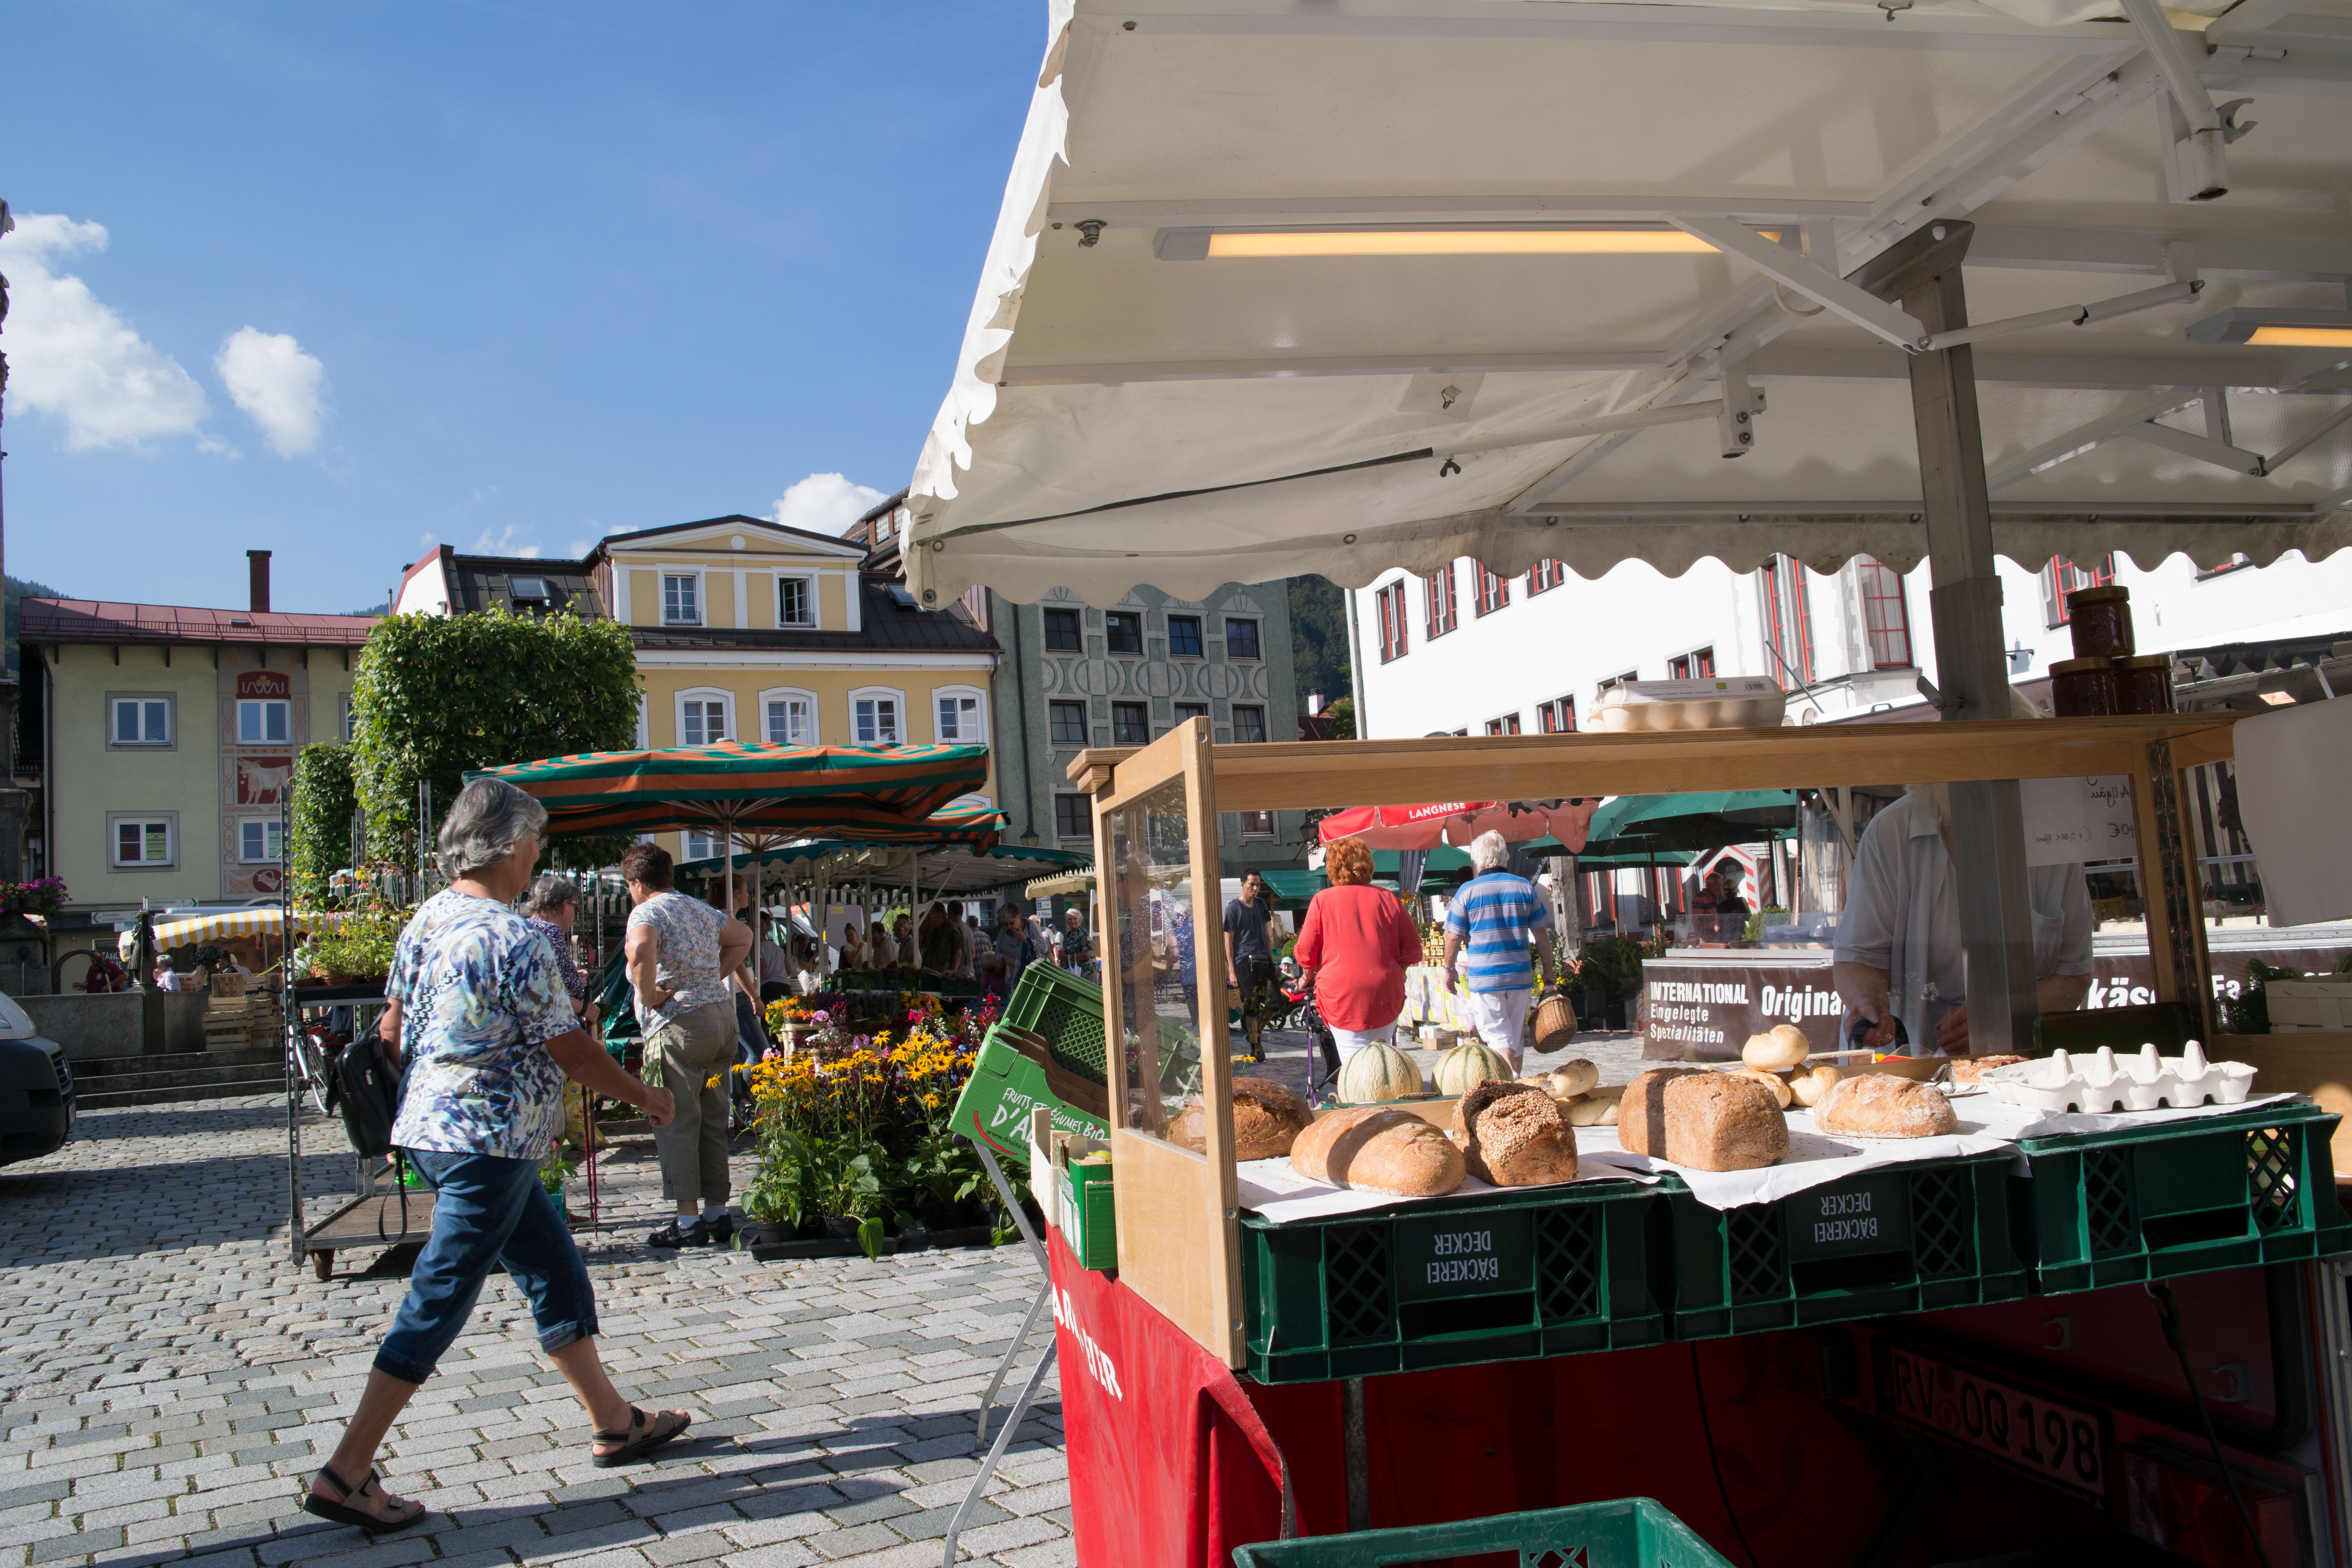 Der Wochenmarkt in Immenstadt findet jetzt Woche statt. Bei verschiedenen Händler können die Kunden Lebensmittel einkaufen.